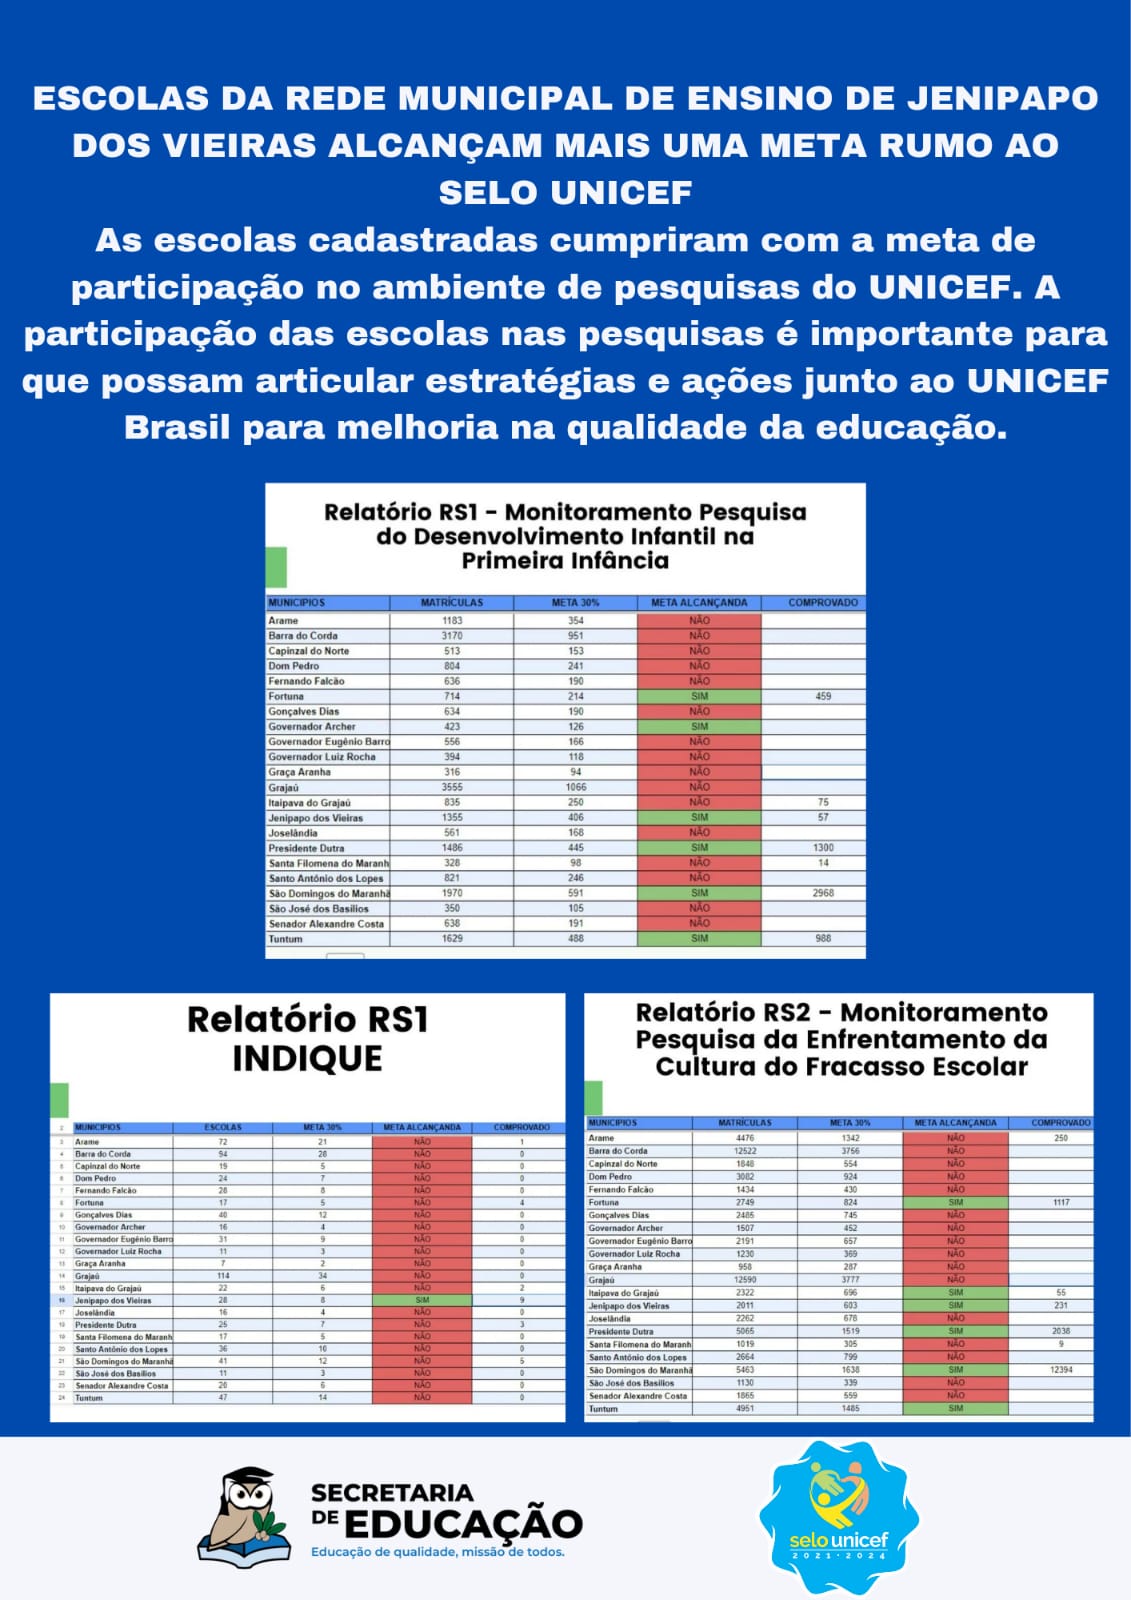 ESCOLAS DA REDE MUNICIPAL DE ENSINO DE JENIPAPO DOS VIEIRAS ALCANÇAM MAIS UMA META RUMO AO SELO UNICEF.